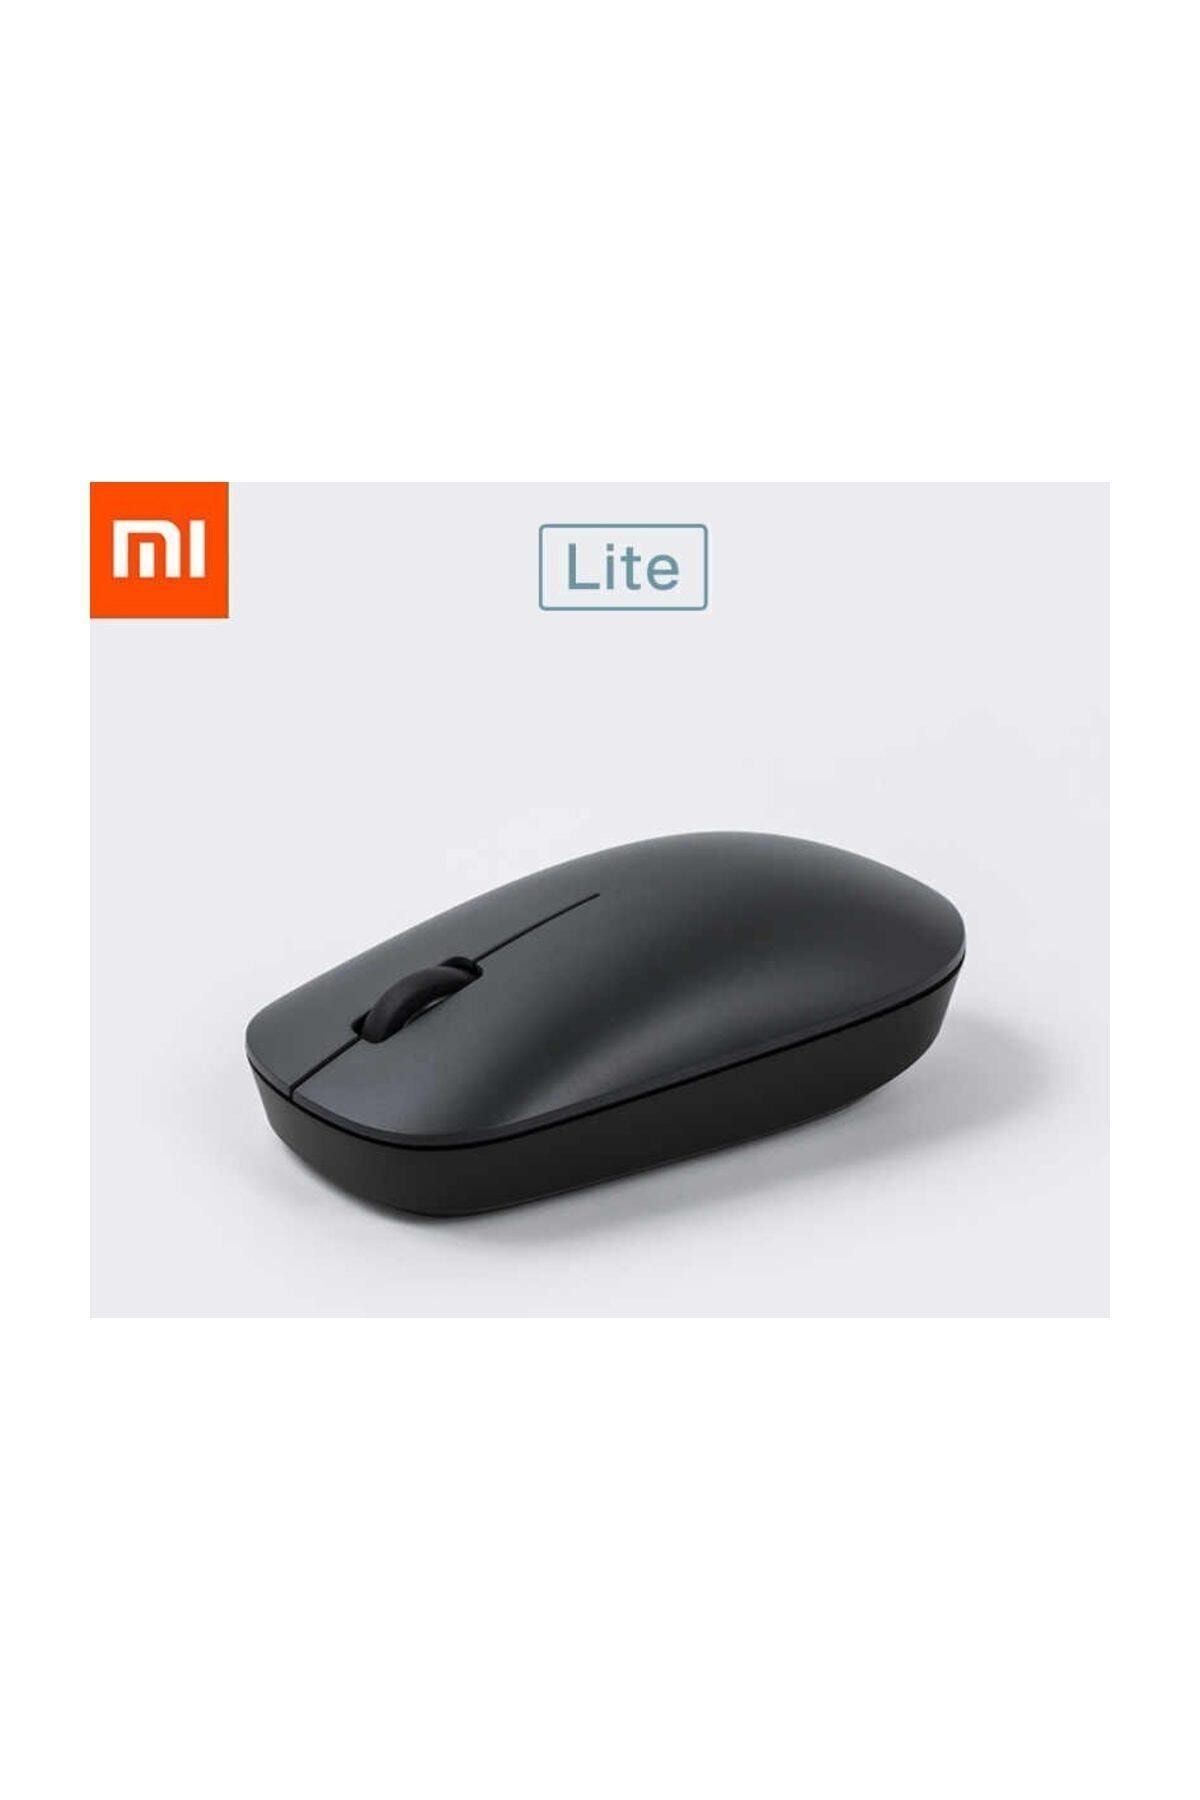 MI Wireless Mouse Lite - Tech Den